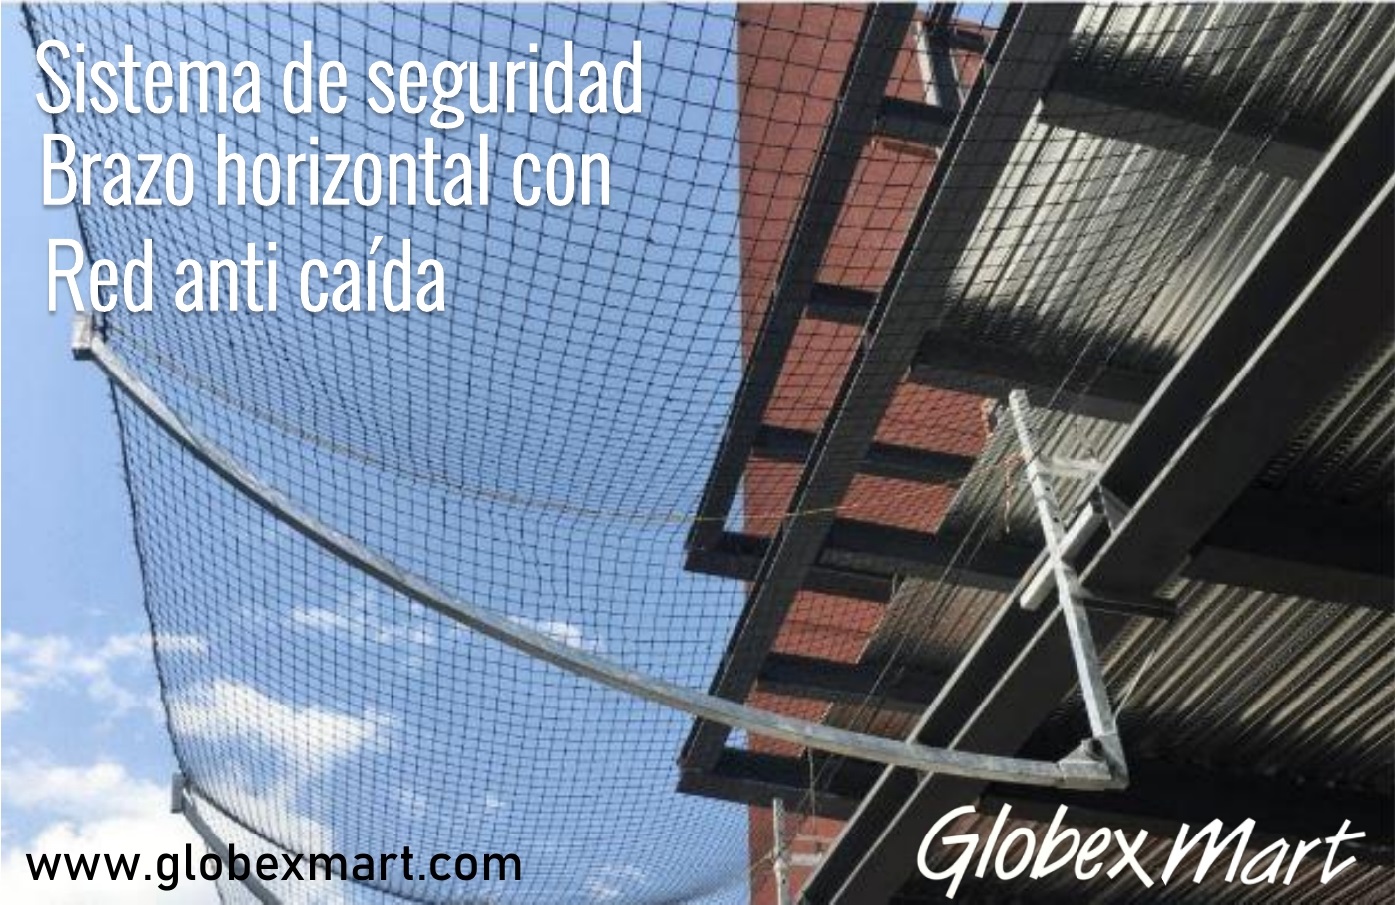 Globexmart